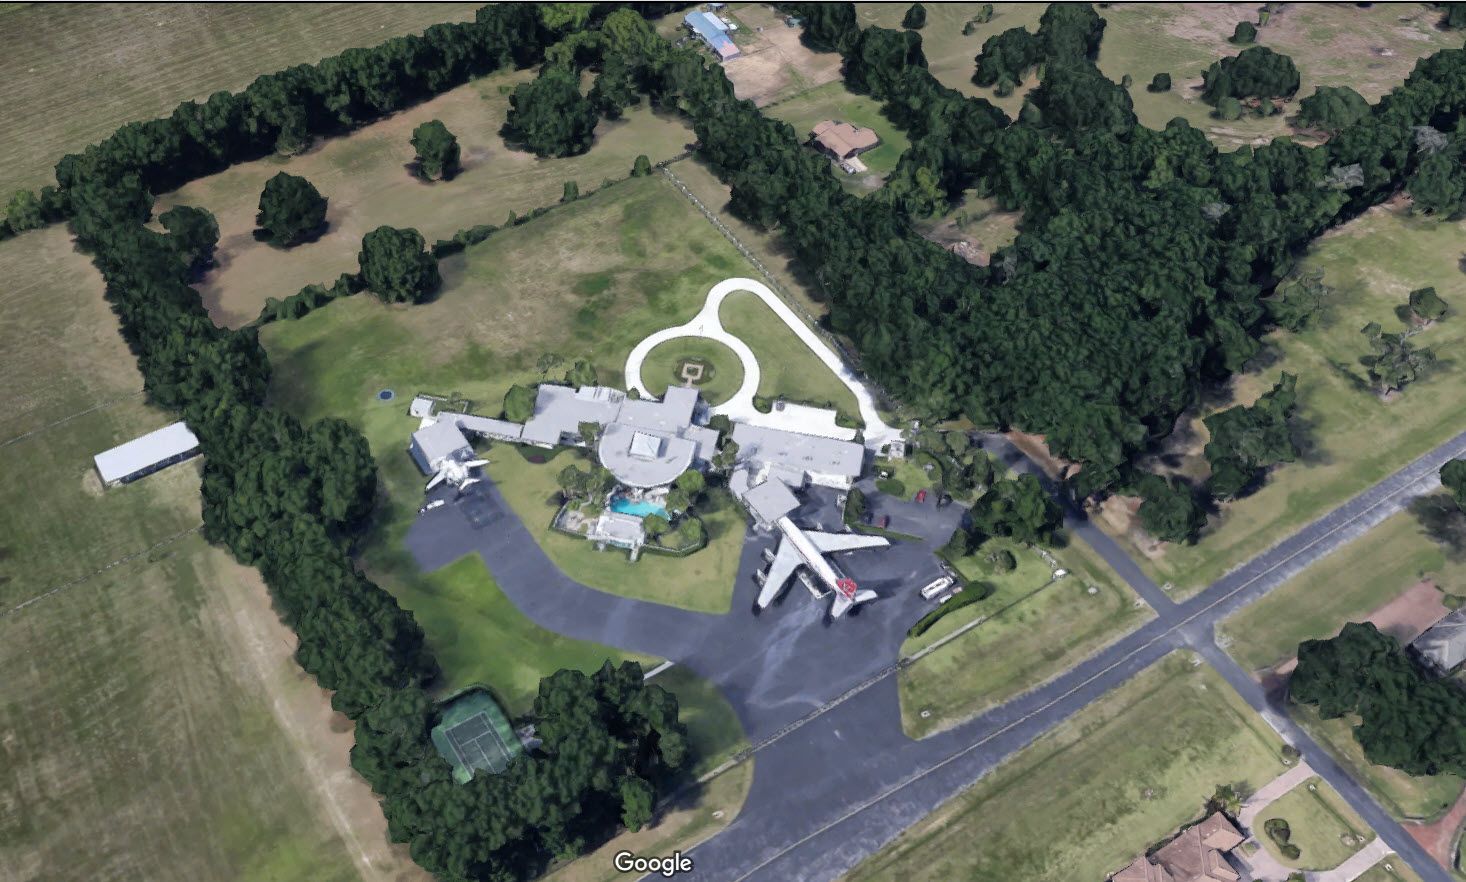 Google Maps Satellite View of John Travolta's House